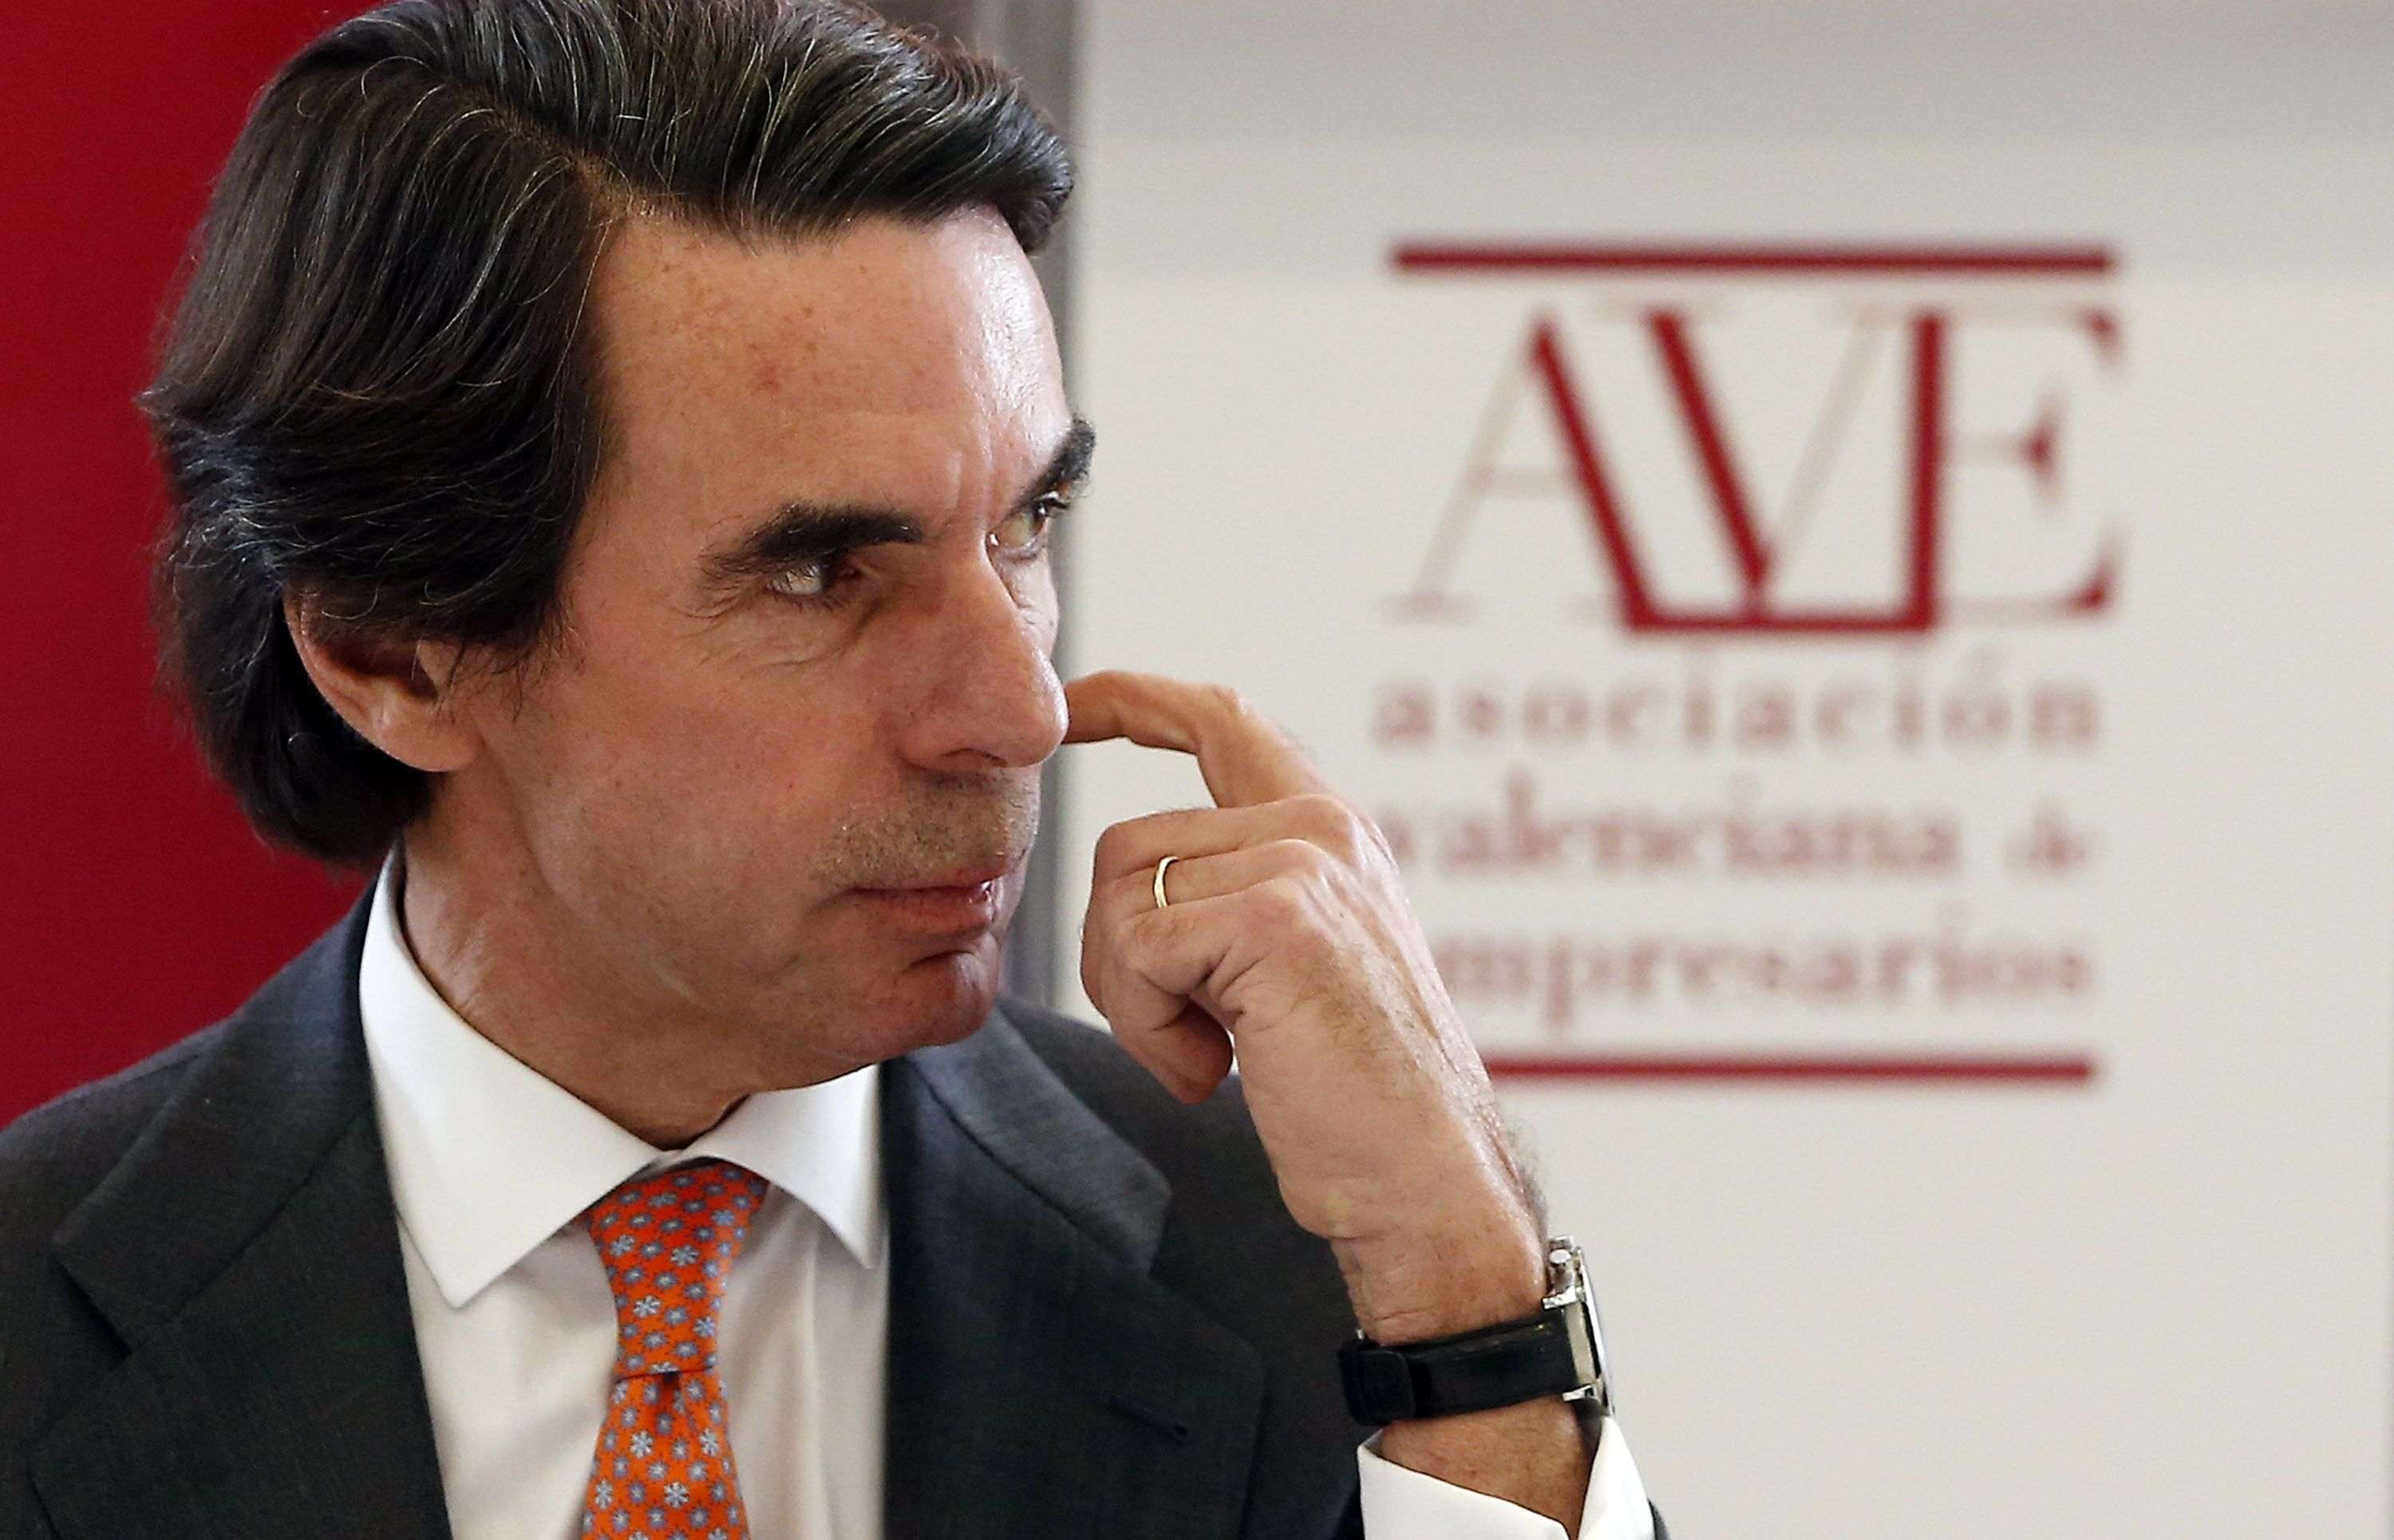 El PP descarta un partido de Aznar: "Será nuestro Pepito Grillo"